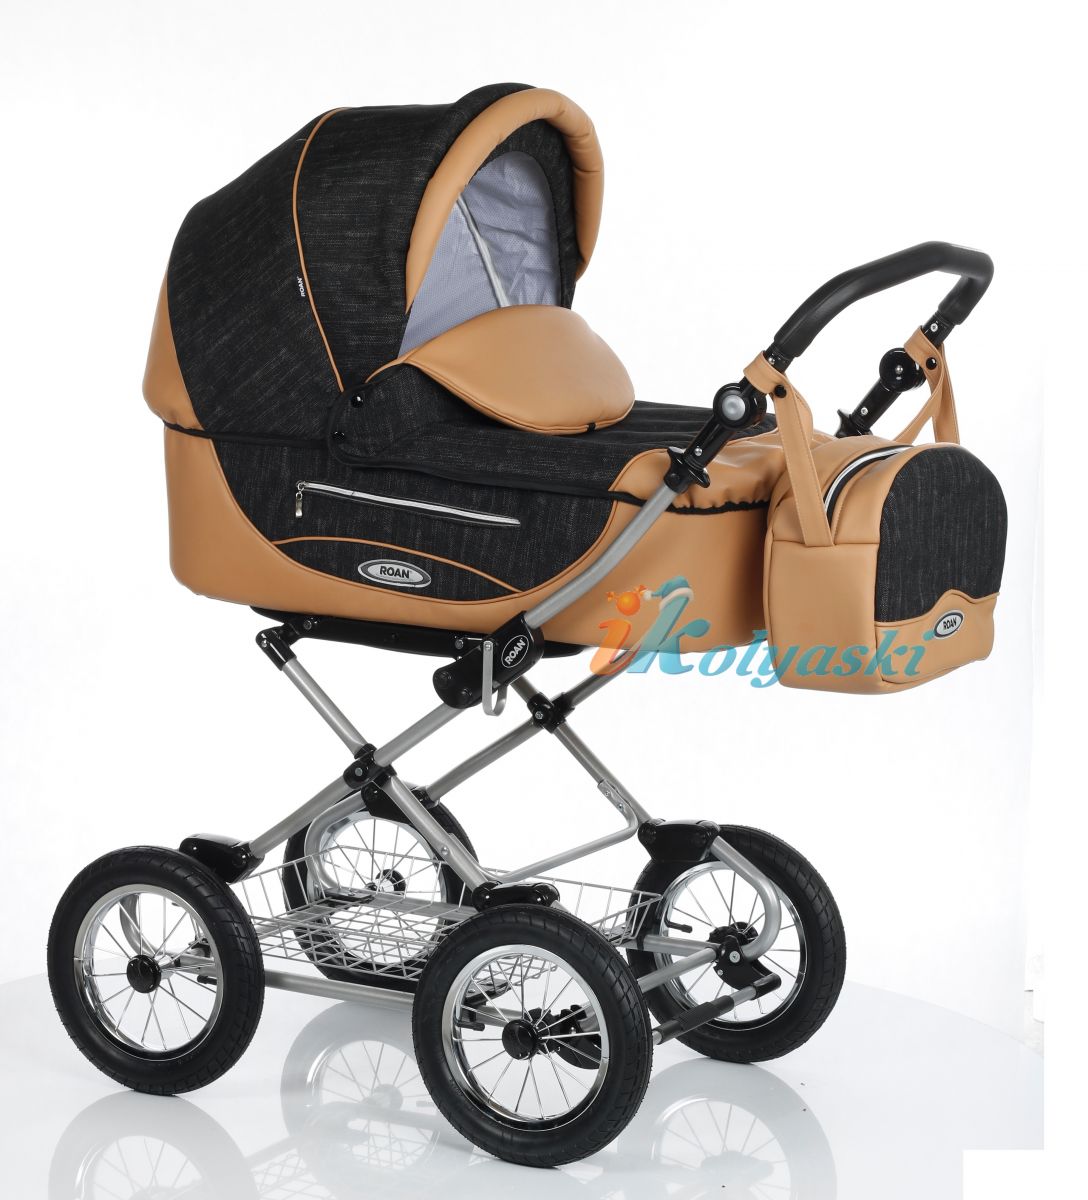 Детская коляска Roan Kortina Luxe Роан Кортина люкс 2018 спальная люлька 2 в 1 , коляска для новорожденных, коляска зима-лето